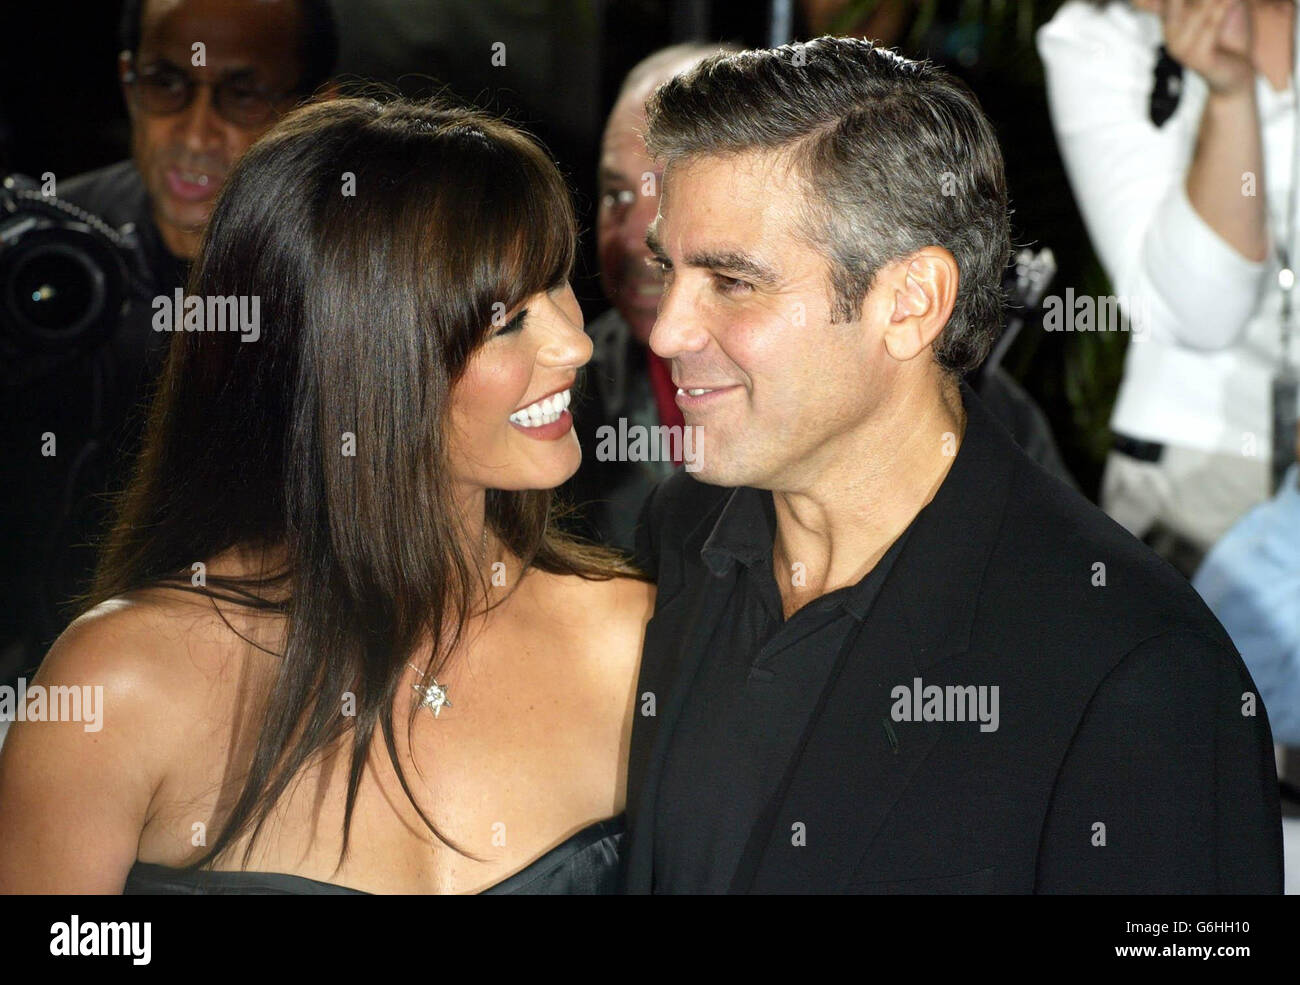 L'attrice Catherine Zeta-Jones e l'attore George Clooney arrivano per la prima mondiale del loro nuovo film intollerabile crudelty all'Accademia delle arti e delle scienze del movimento a Beverly Hills, Los Angeles. Foto Stock